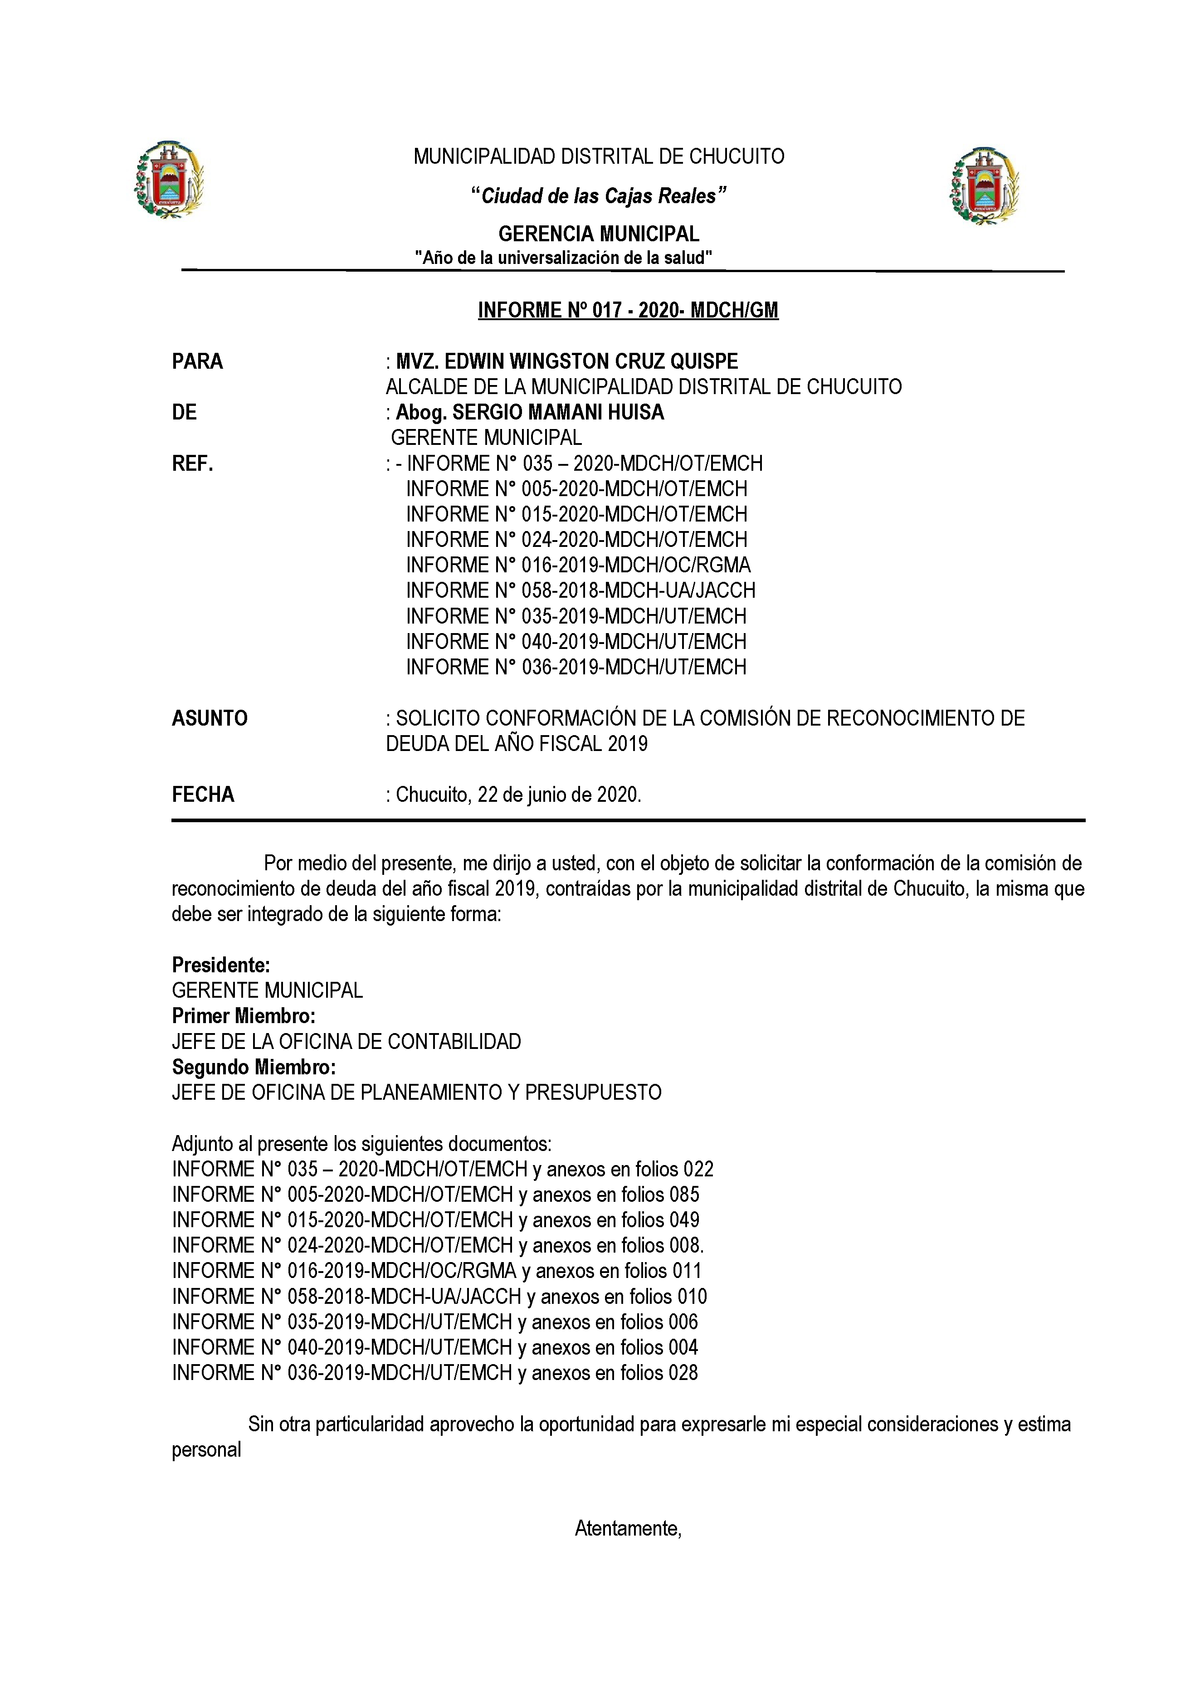 Informe Act Diciembre 19 Municipalidad Distrital De Chucuito Ciudad De Las Cajas Reales Gerencia Municipal De La Universalizaci De La Salud Informe 017 Studocu